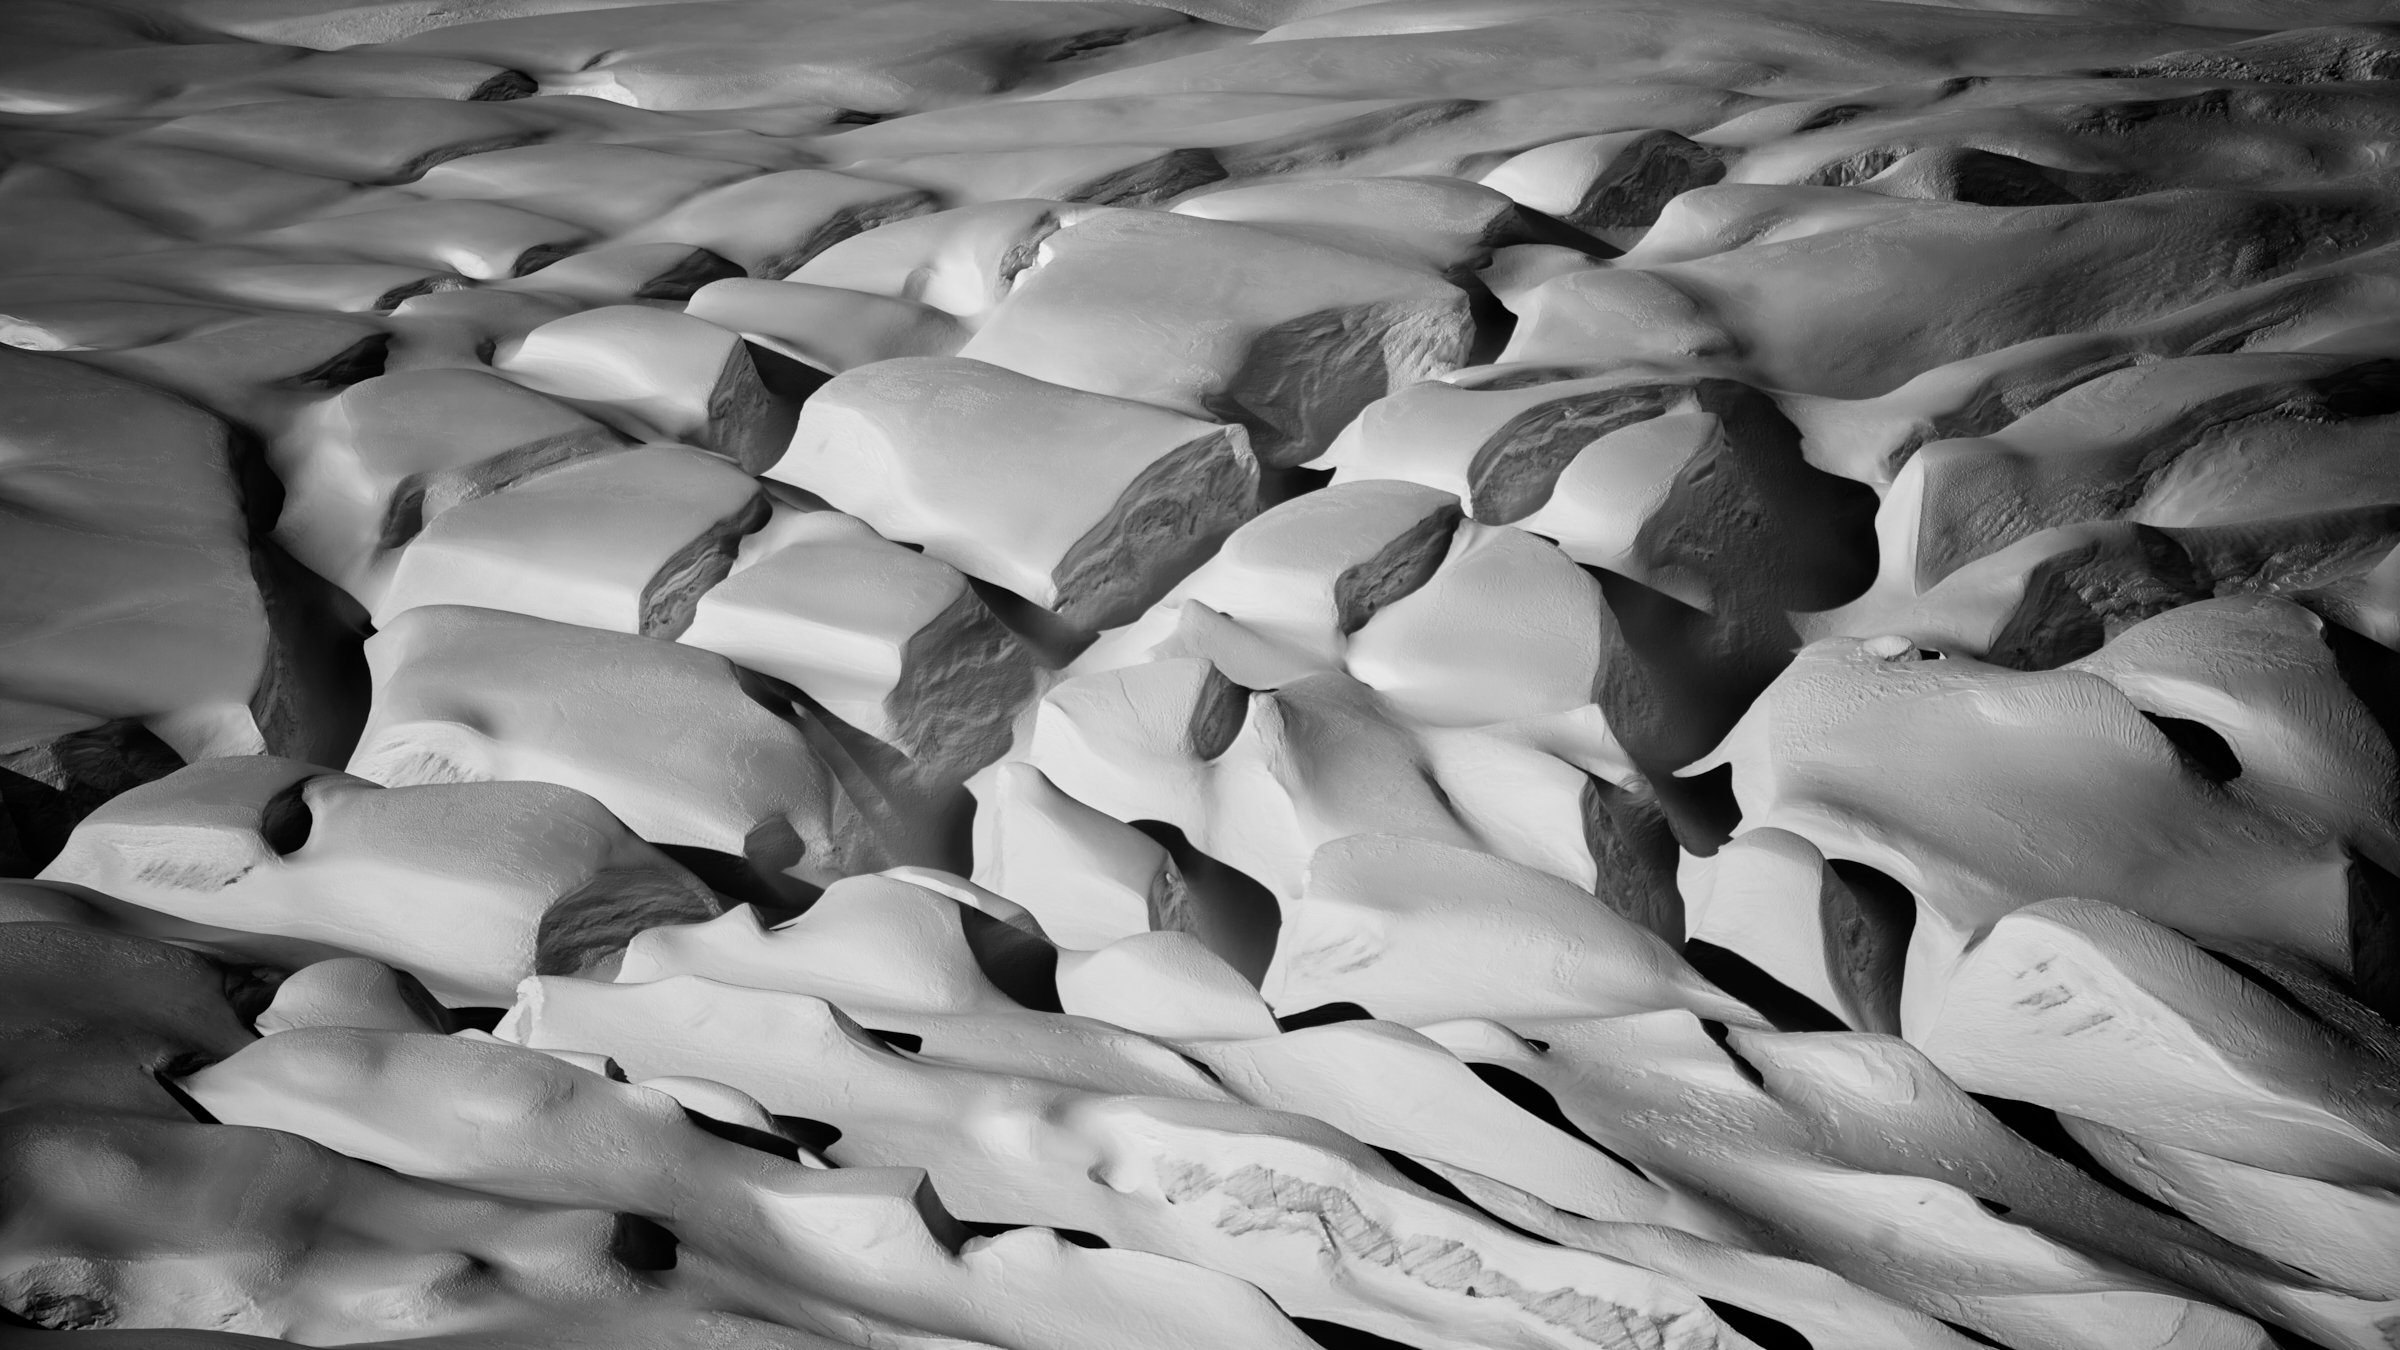 Torta Bianca Limited Edition Serie
Morteratschgletscher fotografiert von Jürg Kaufmann
#engadin #glacier #gletscher #glacierart #rethinking #juergkaufmann  
